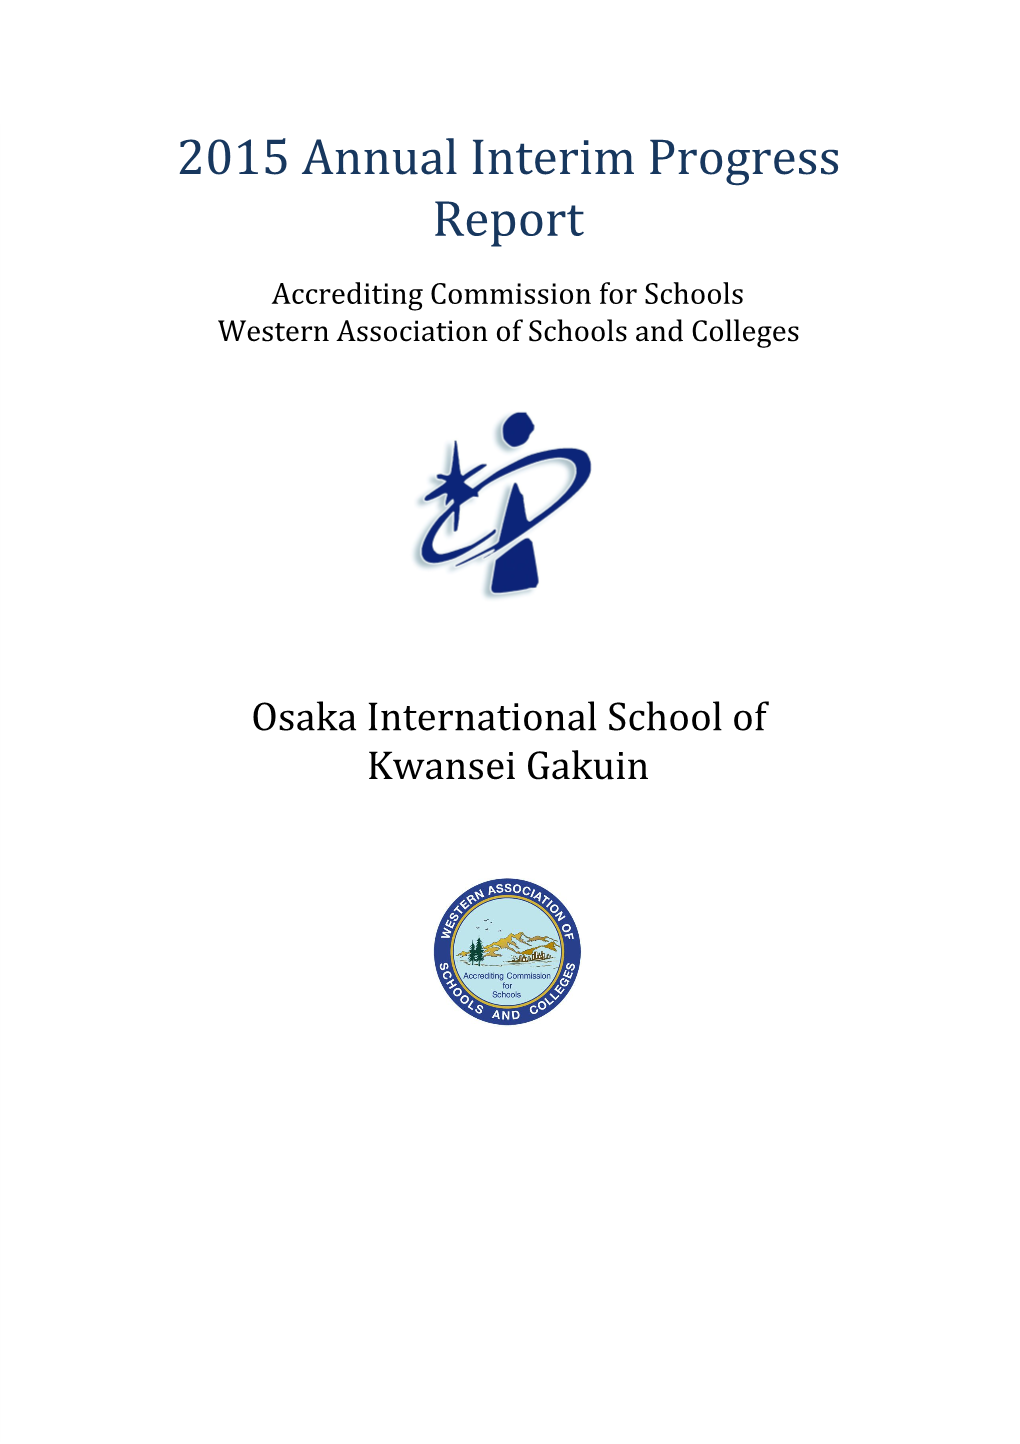 2015 Annual Interim Progress Report